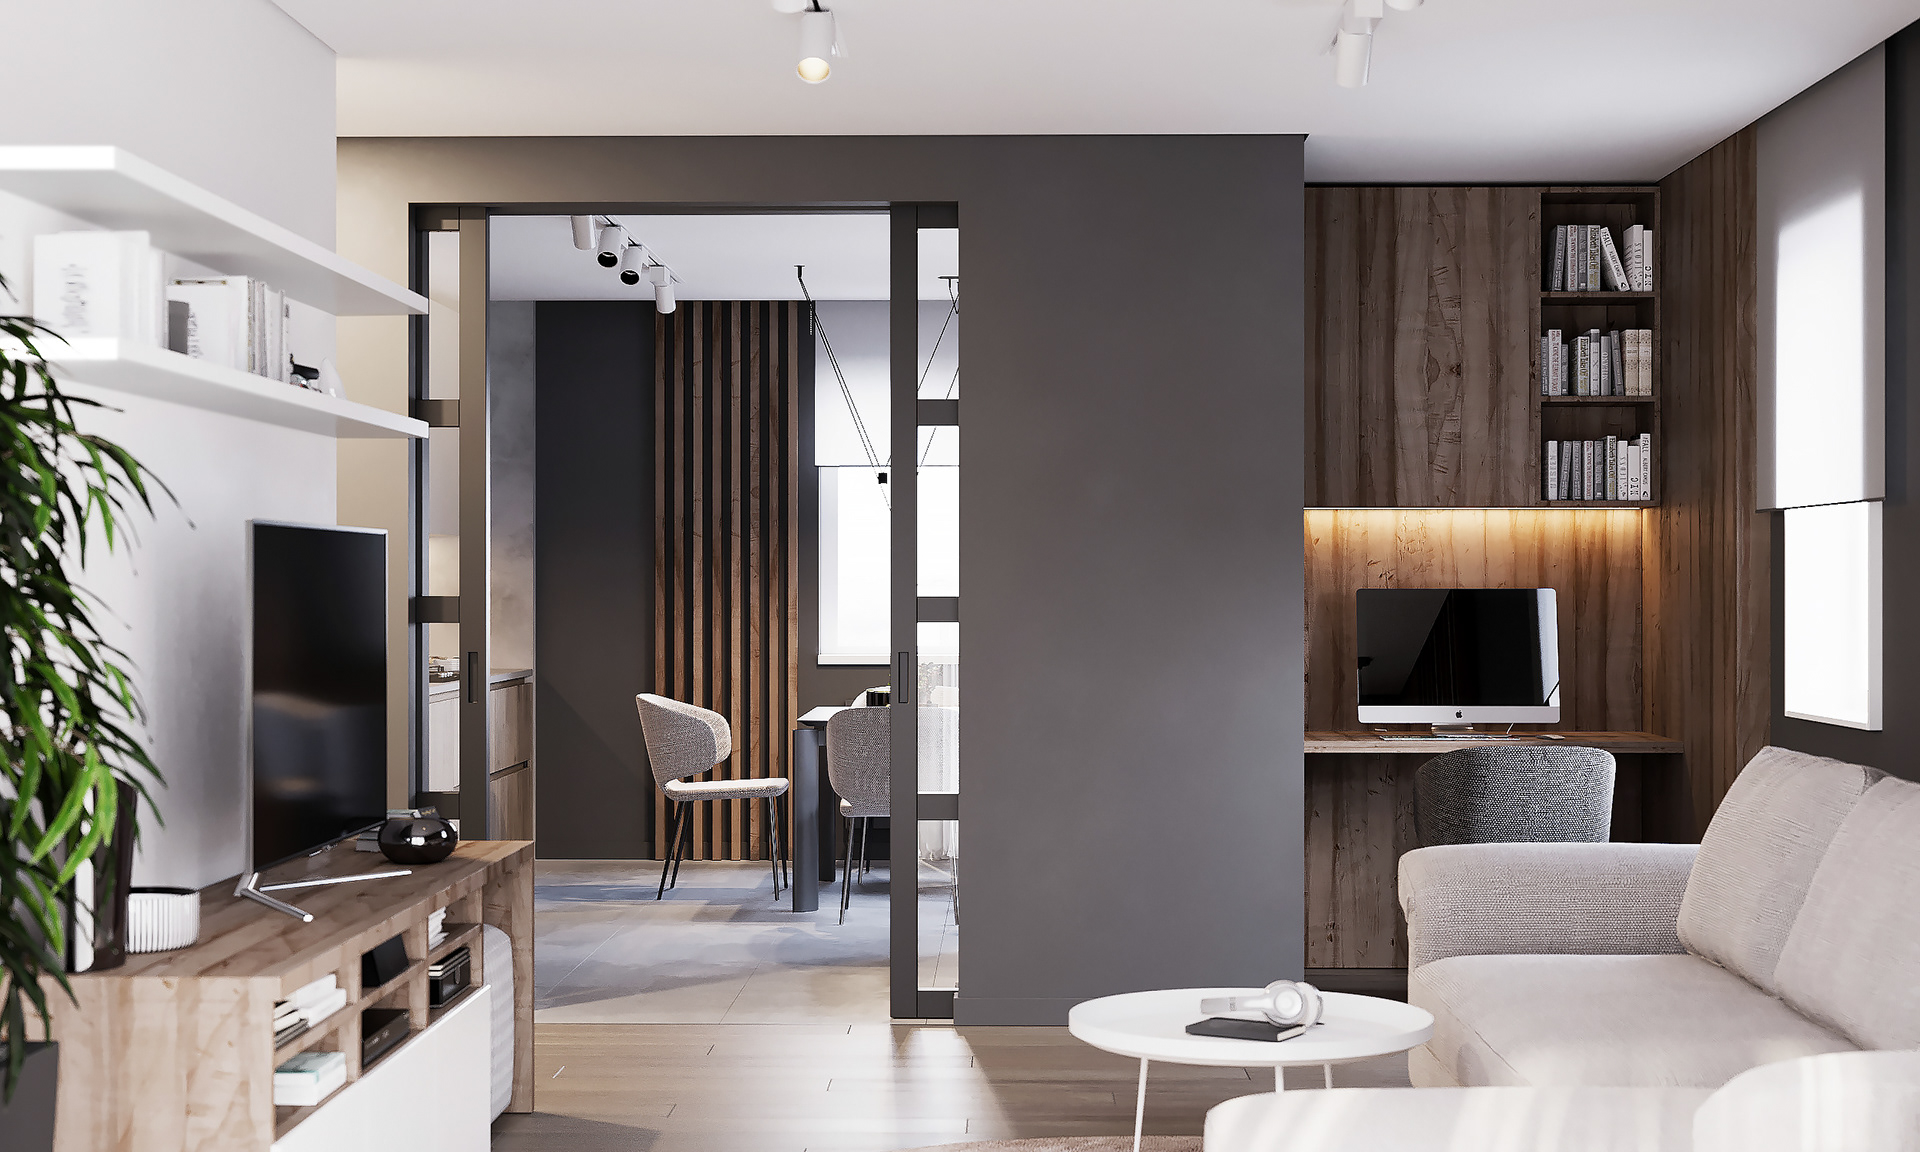 IconP - Thiết kế chung cư căn hộ phong cách hiện đại, gam màu đen, xám độc đáo, kết hợp với gỗ và nhấn màu vàng ấn tượng